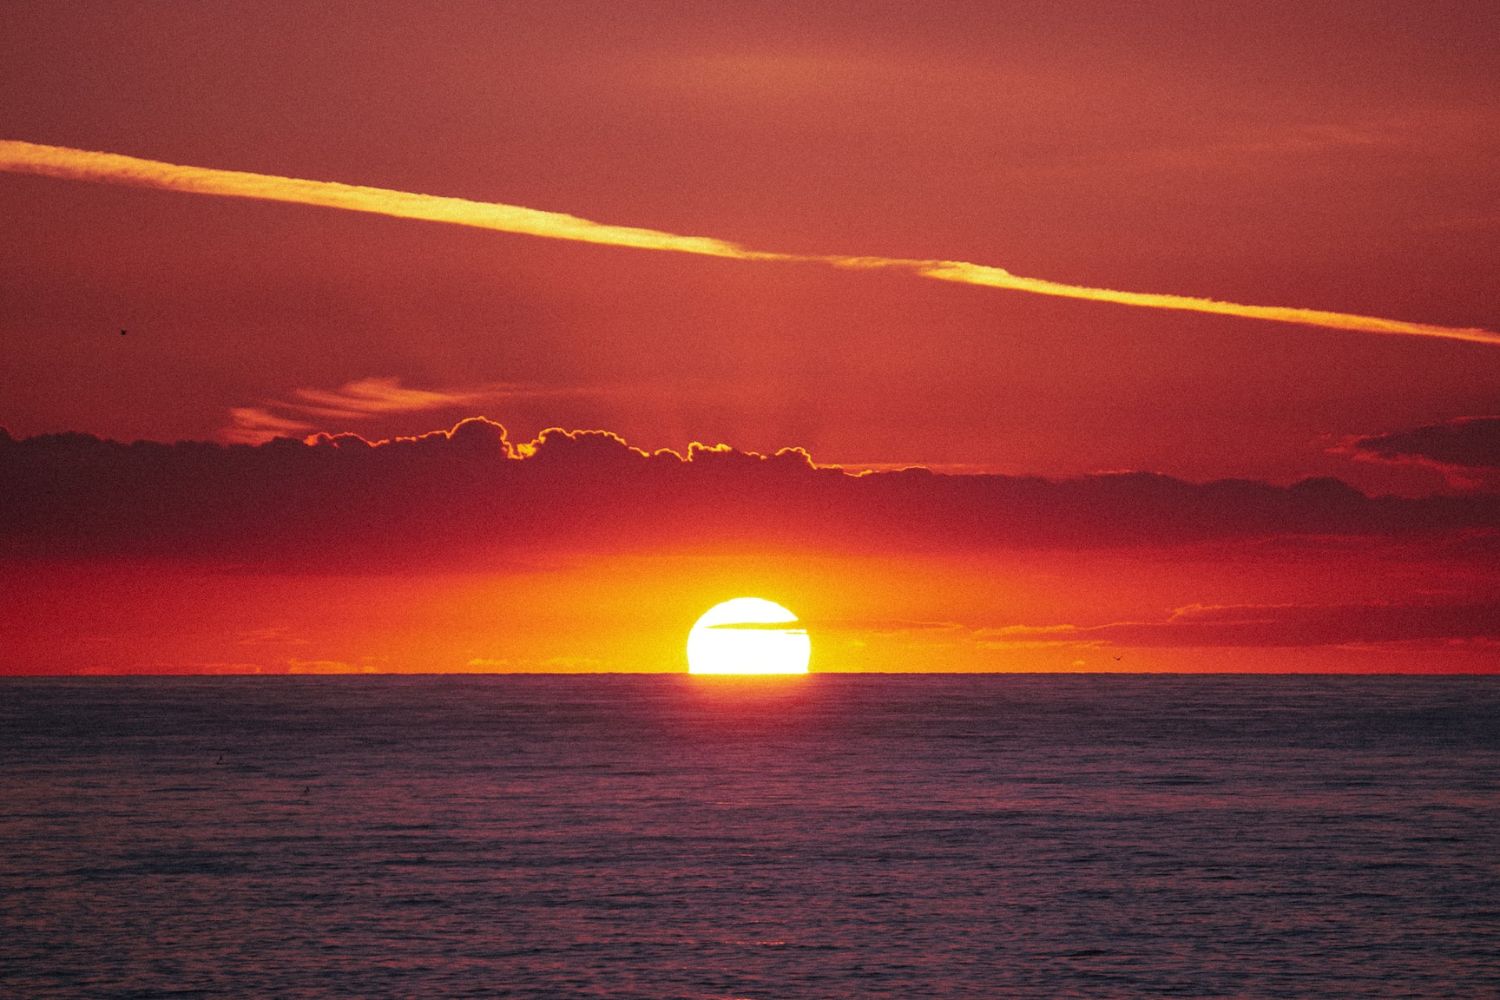 amazing sunset photo 